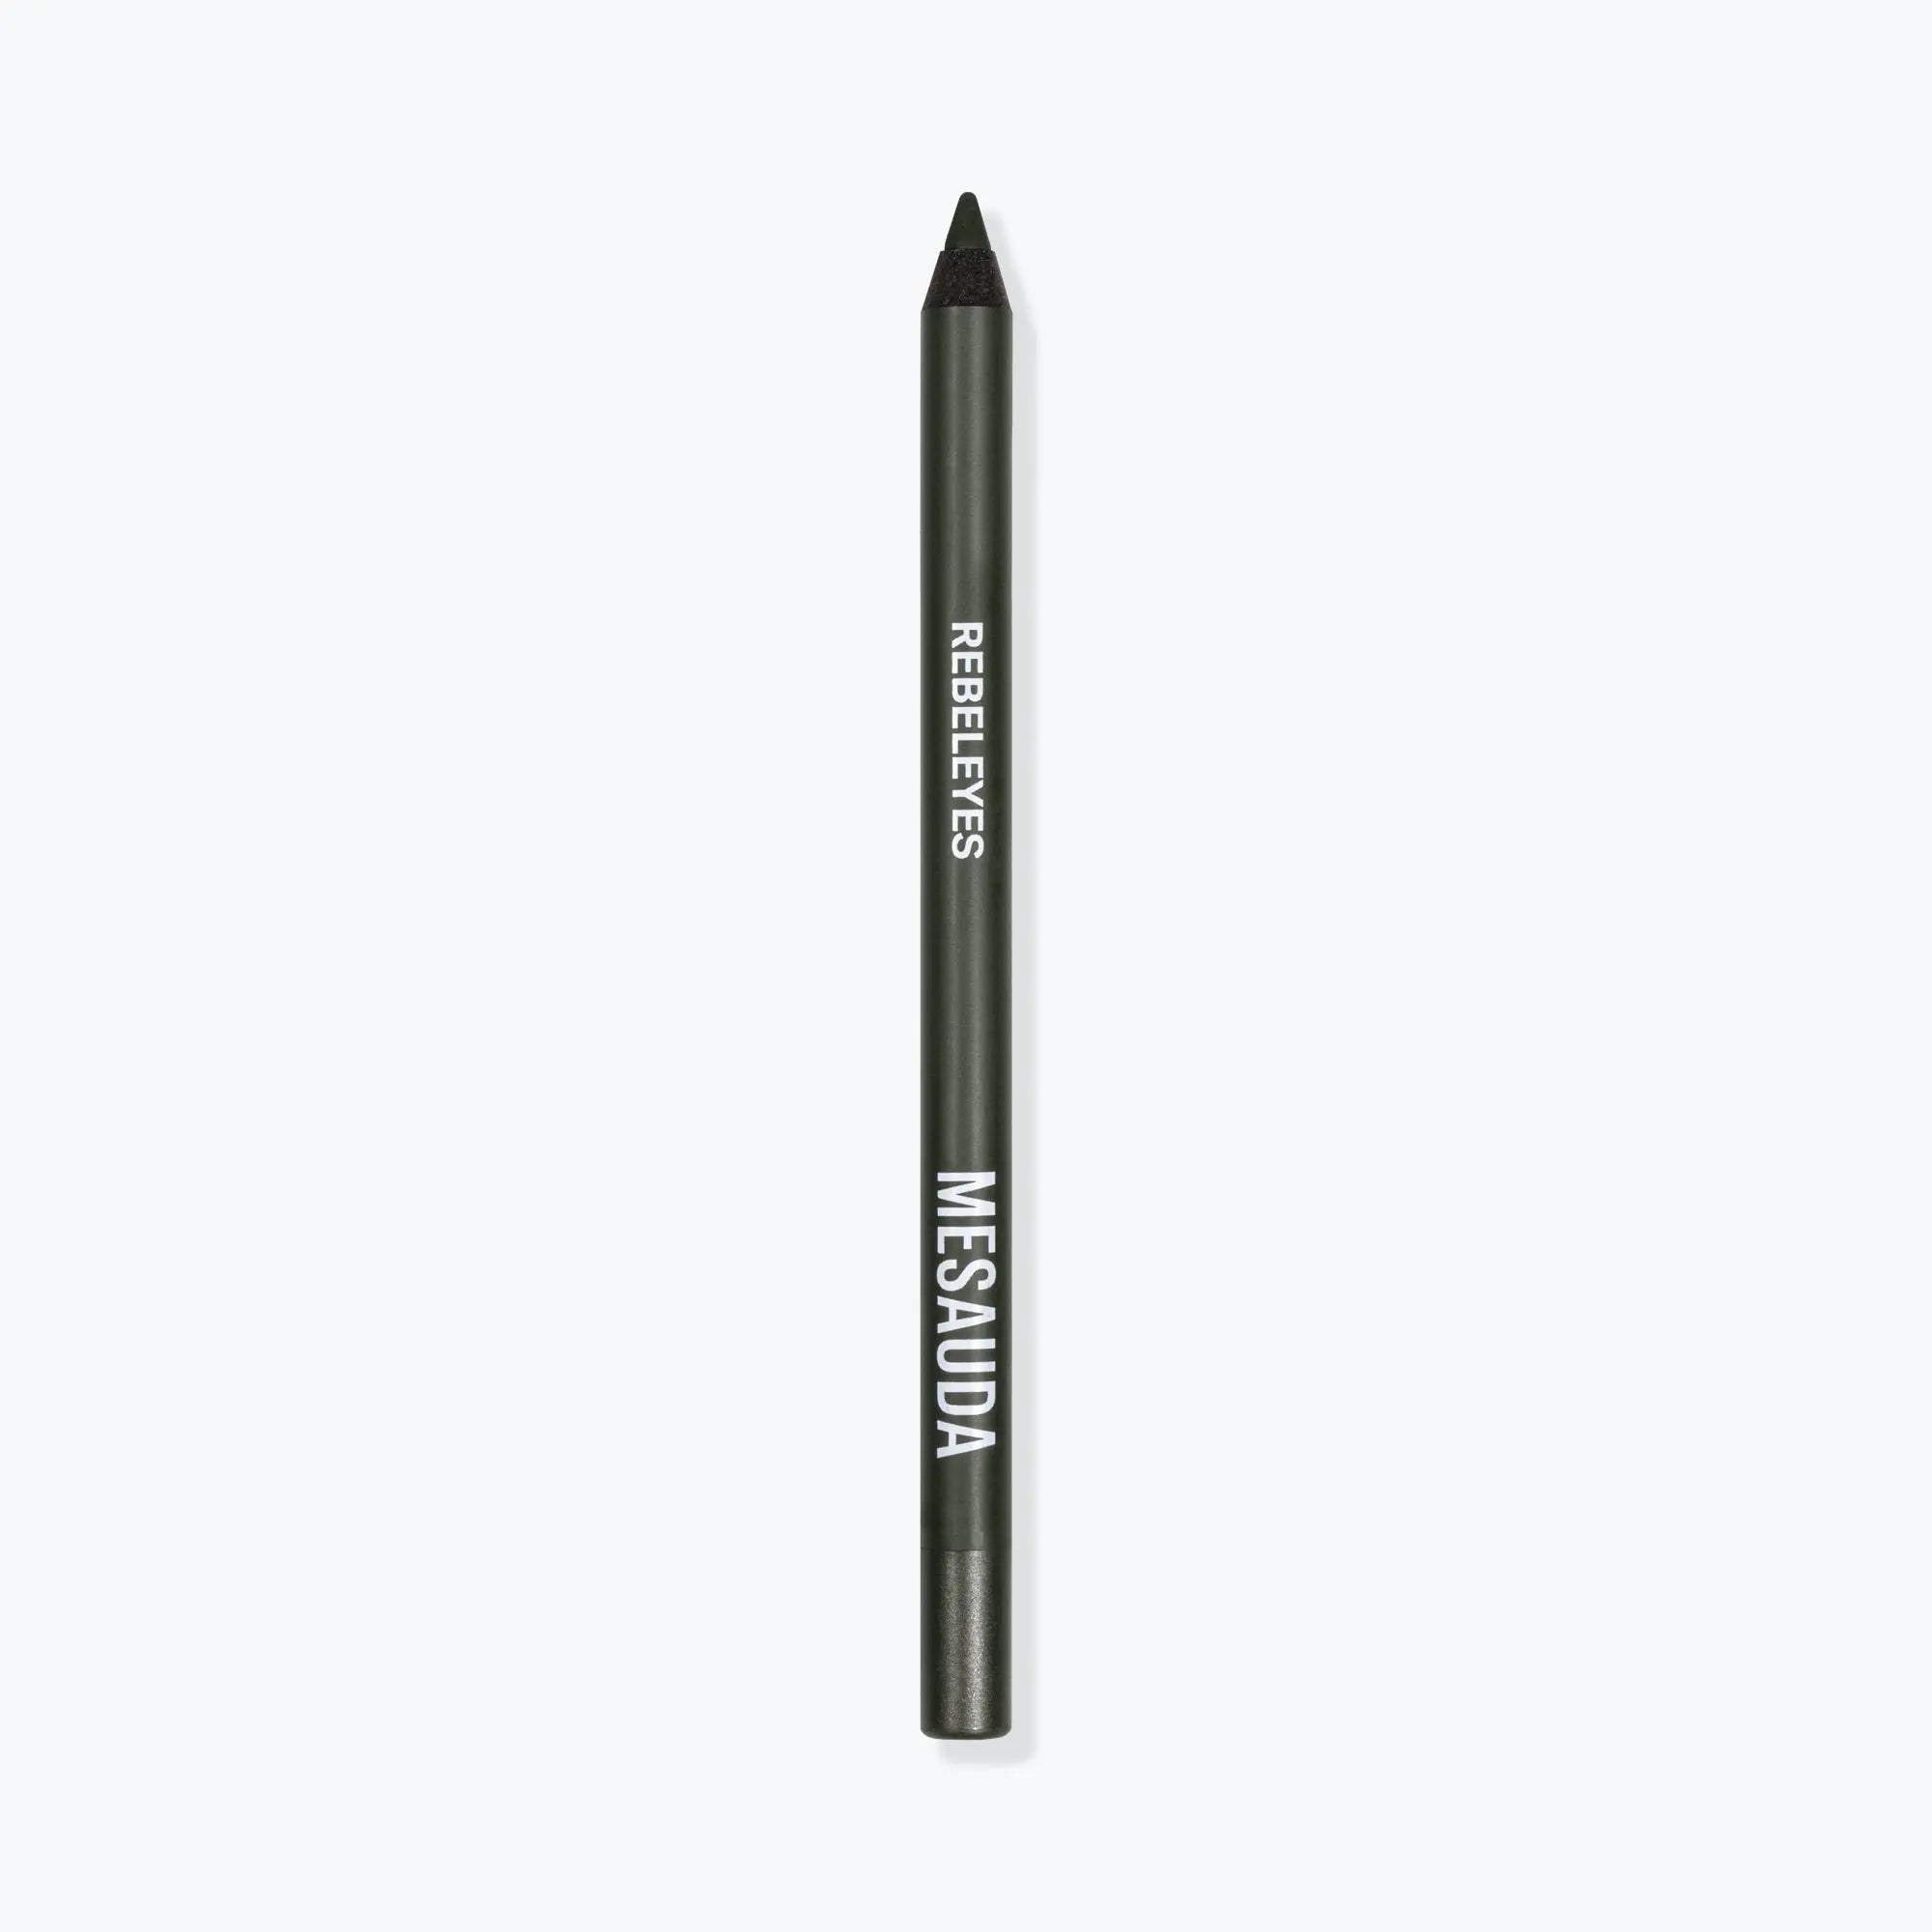 REBELEYES Plastic Waterproof Eye Pencil